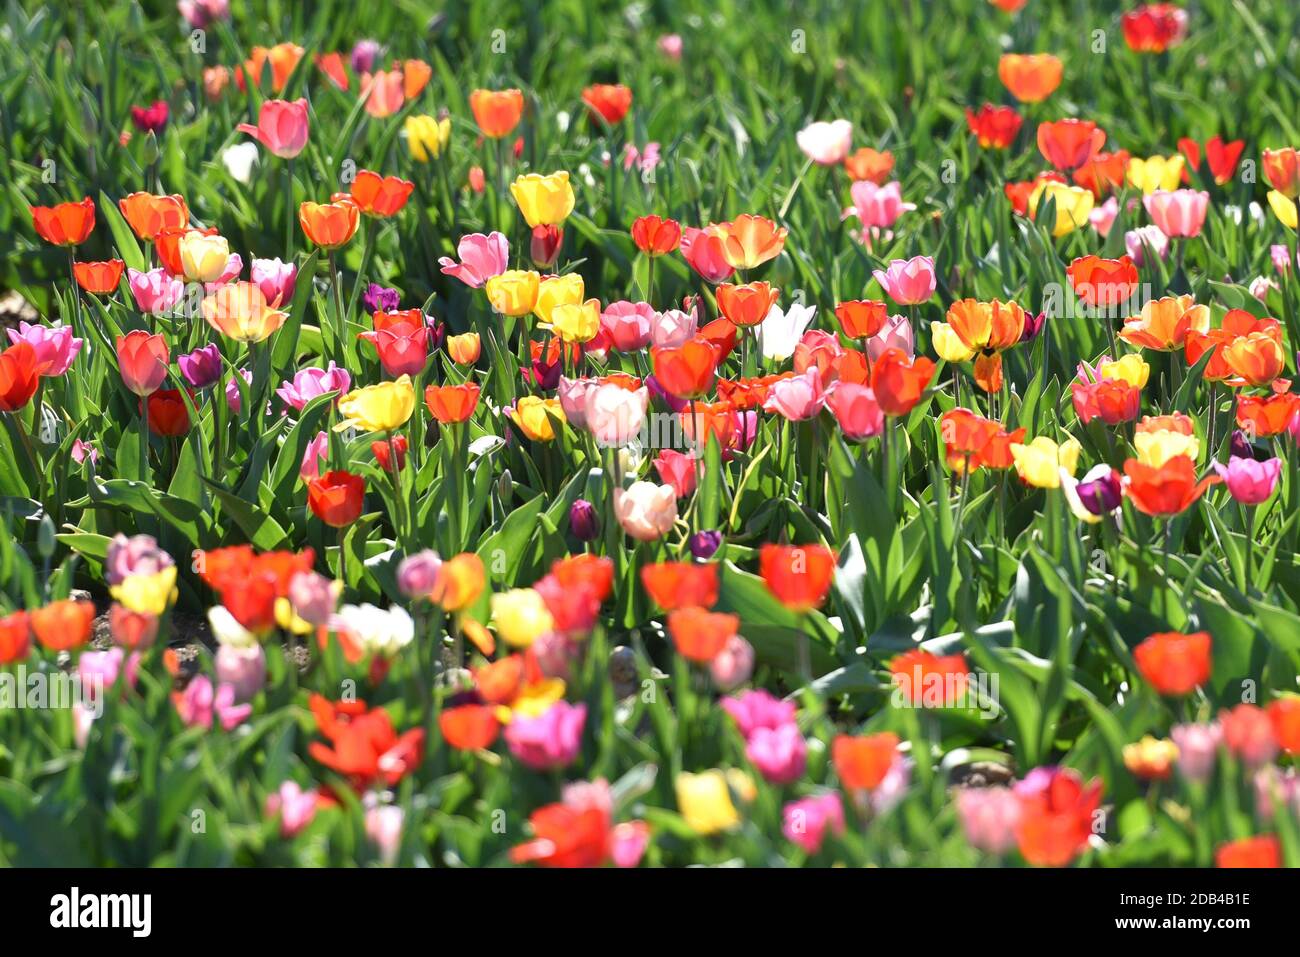 Die Tulpen sind eine Pflanzengattung in der Familie der Liliengewächse. Sie blühen im Frühjahr. - The tulips are a genus of plants in the lily family. Stock Photo